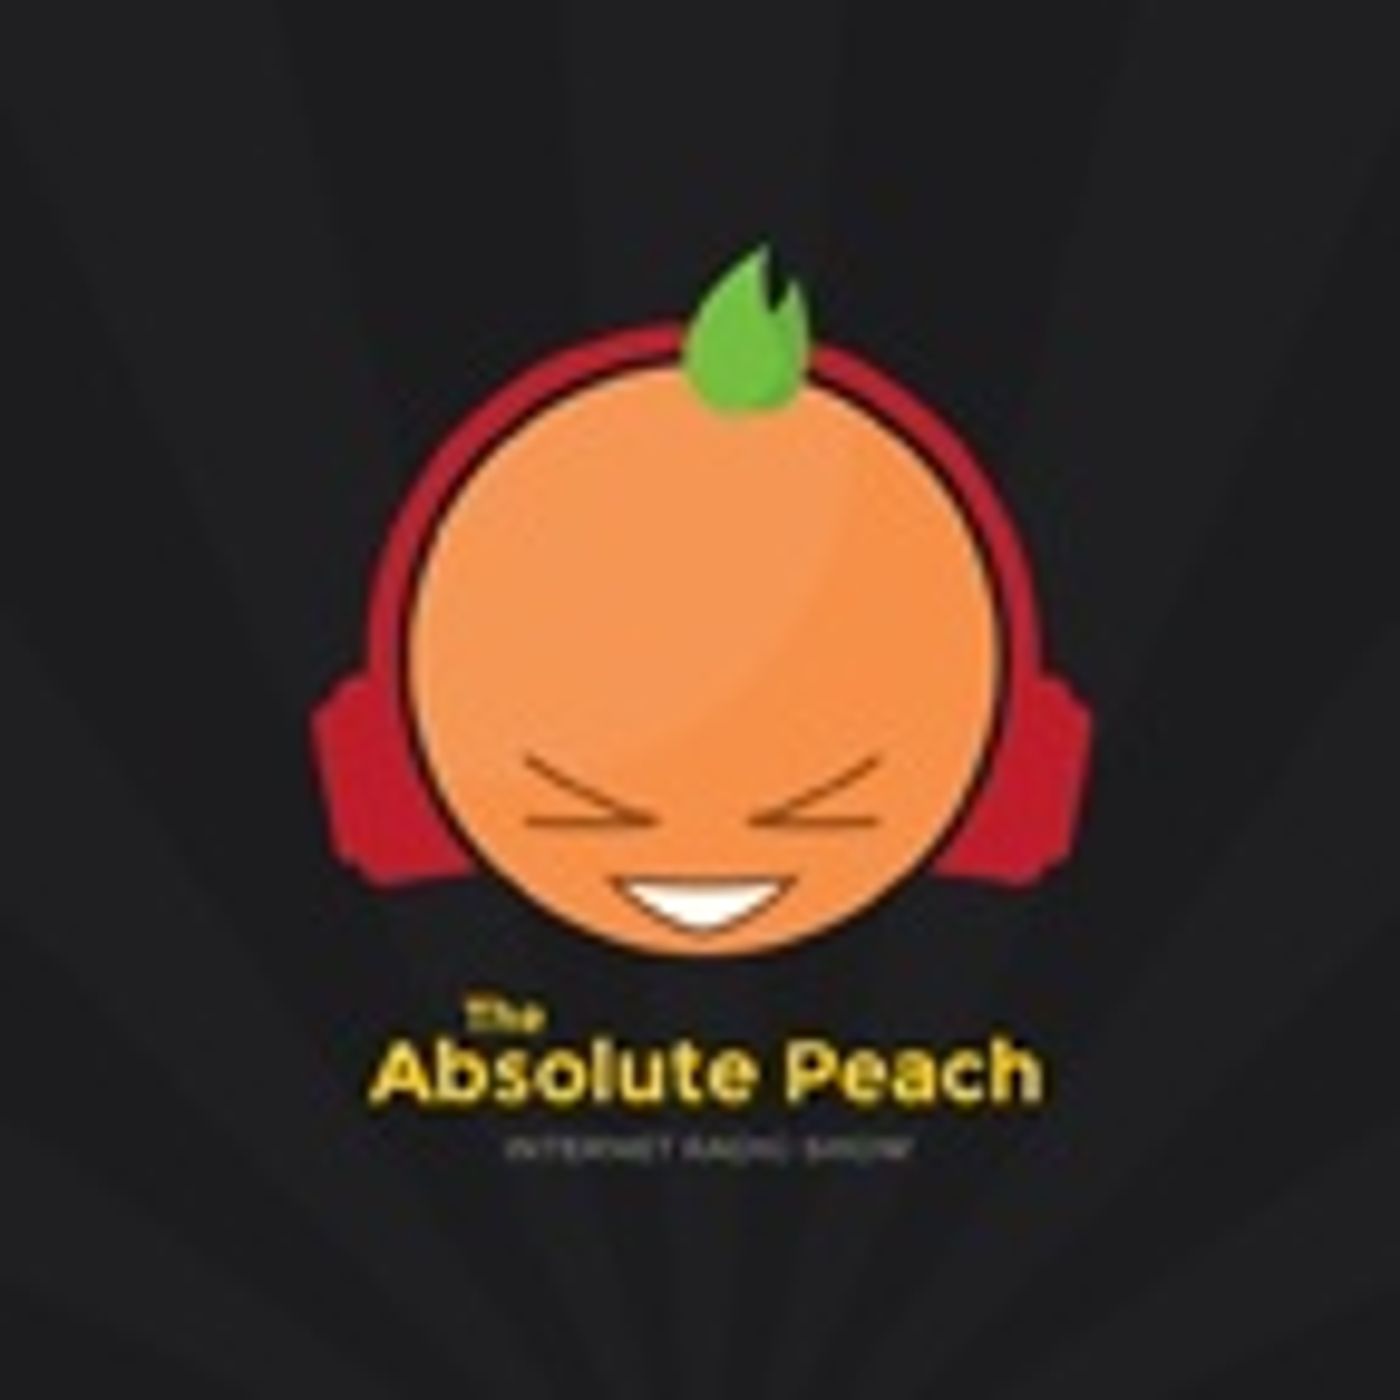 The Absolute Peach